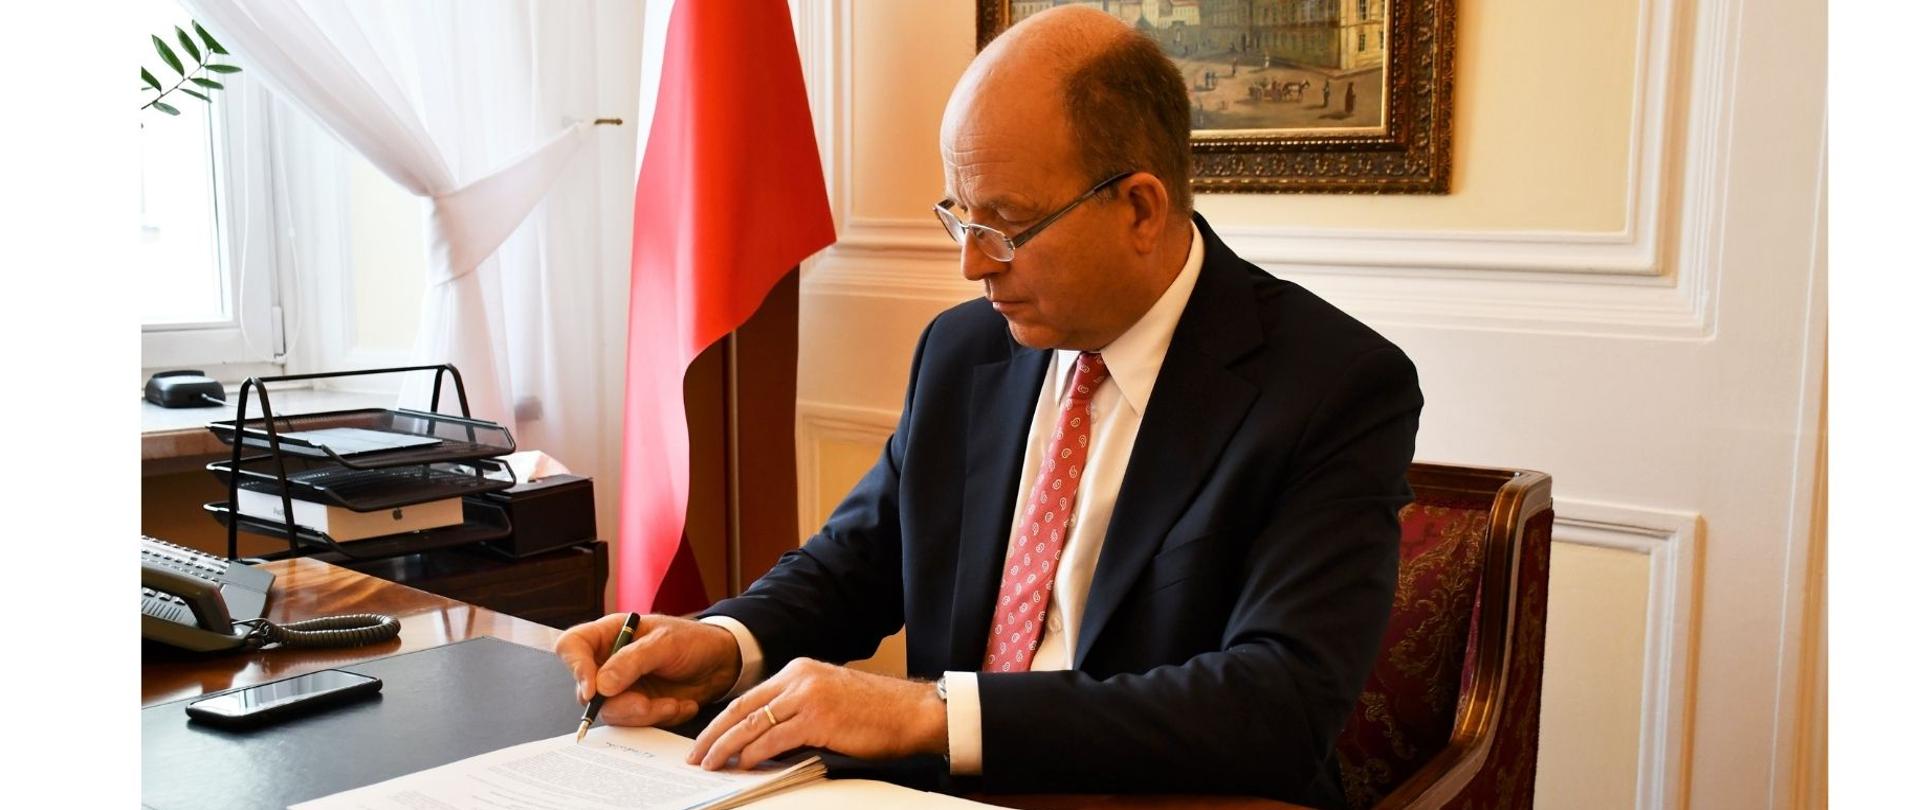 Na zdjęciu znajduje się elegancko ubrany mężczyzna. Mężczyzna ten siedzi za biurkiem, przy którym podpisuje dokument. W tle znajduje się biało-czerwona flaga, obraz. 